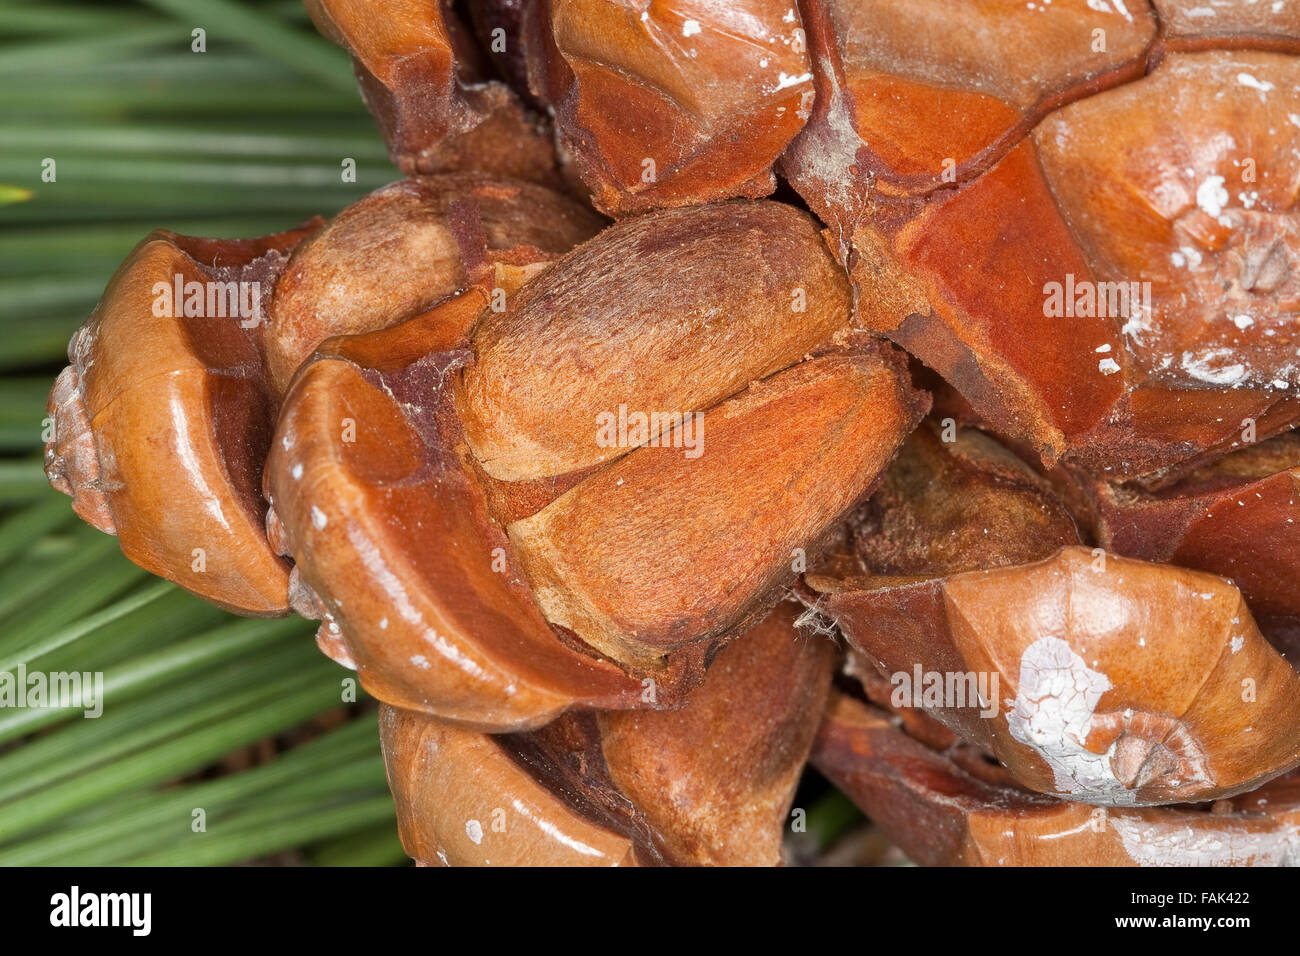 Stone Pine, Umbrella Pine, Pine nuts, seeds, Pine-nut, Pinienkern, Pinienkerne, Pinie, Schirmkiefer, Pinienzapfen, Pinus pinea Stock Photo